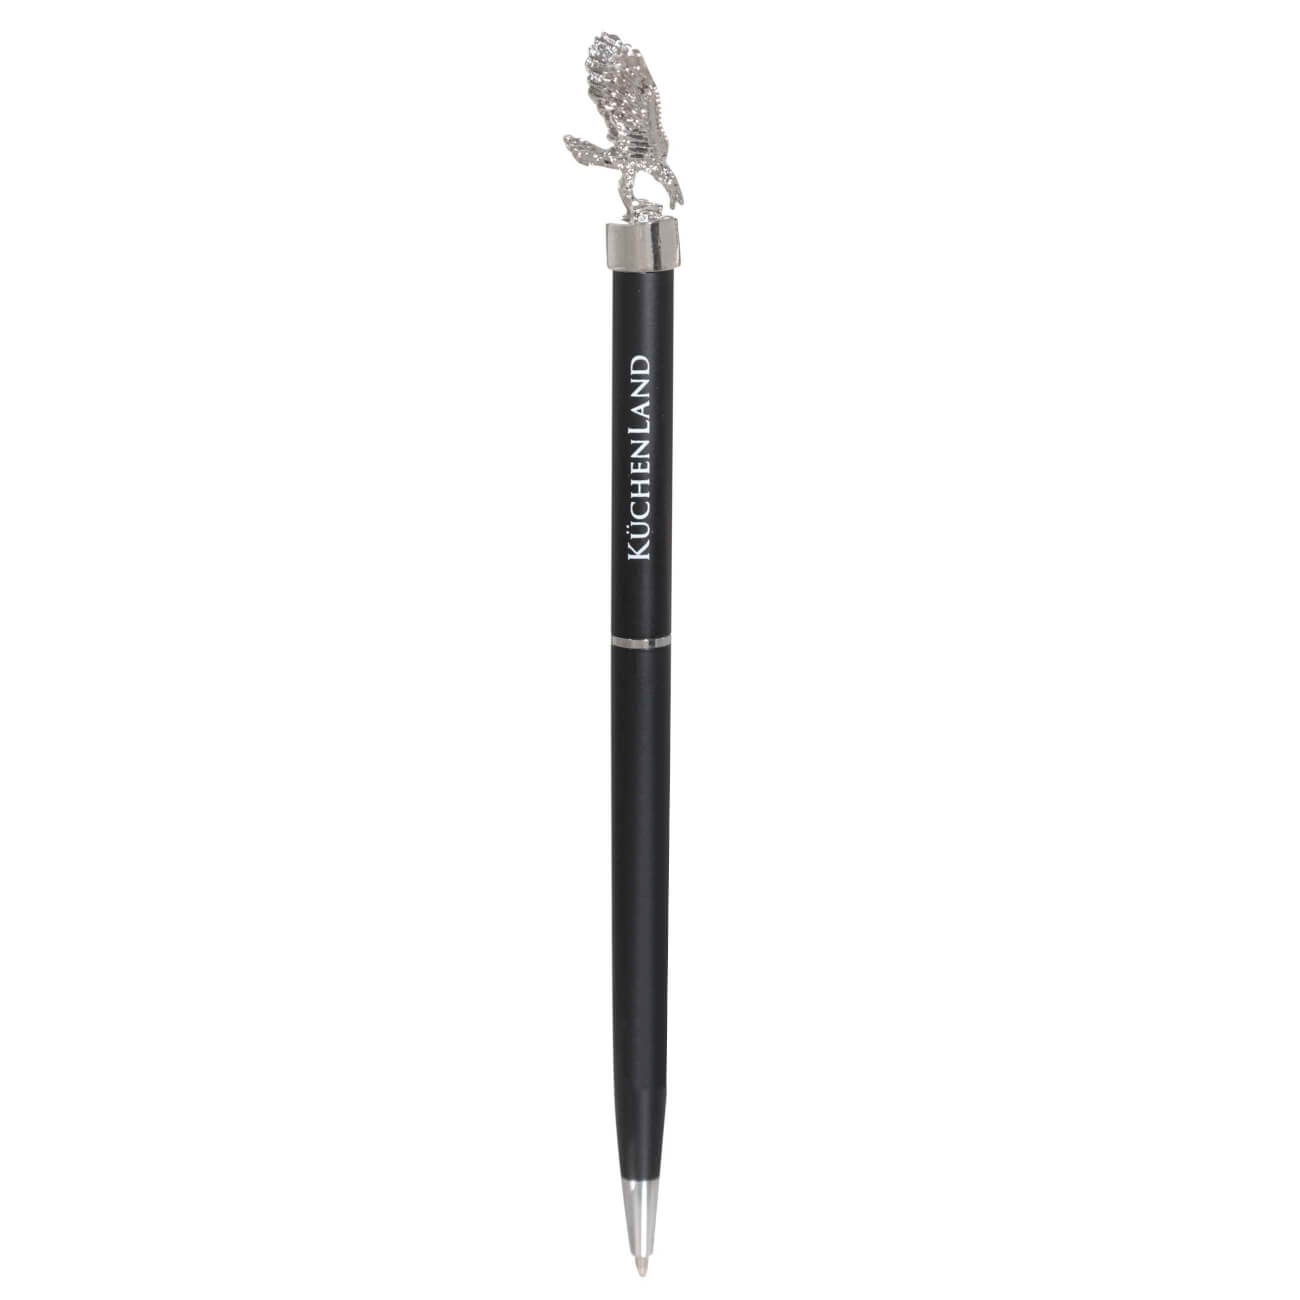 Ручка шариковая, 15 см, с фигуркой, сталь, черная, Орел, Draw figure ручка подарочная шариковая в кожзам футляре поворотная черная с золотом